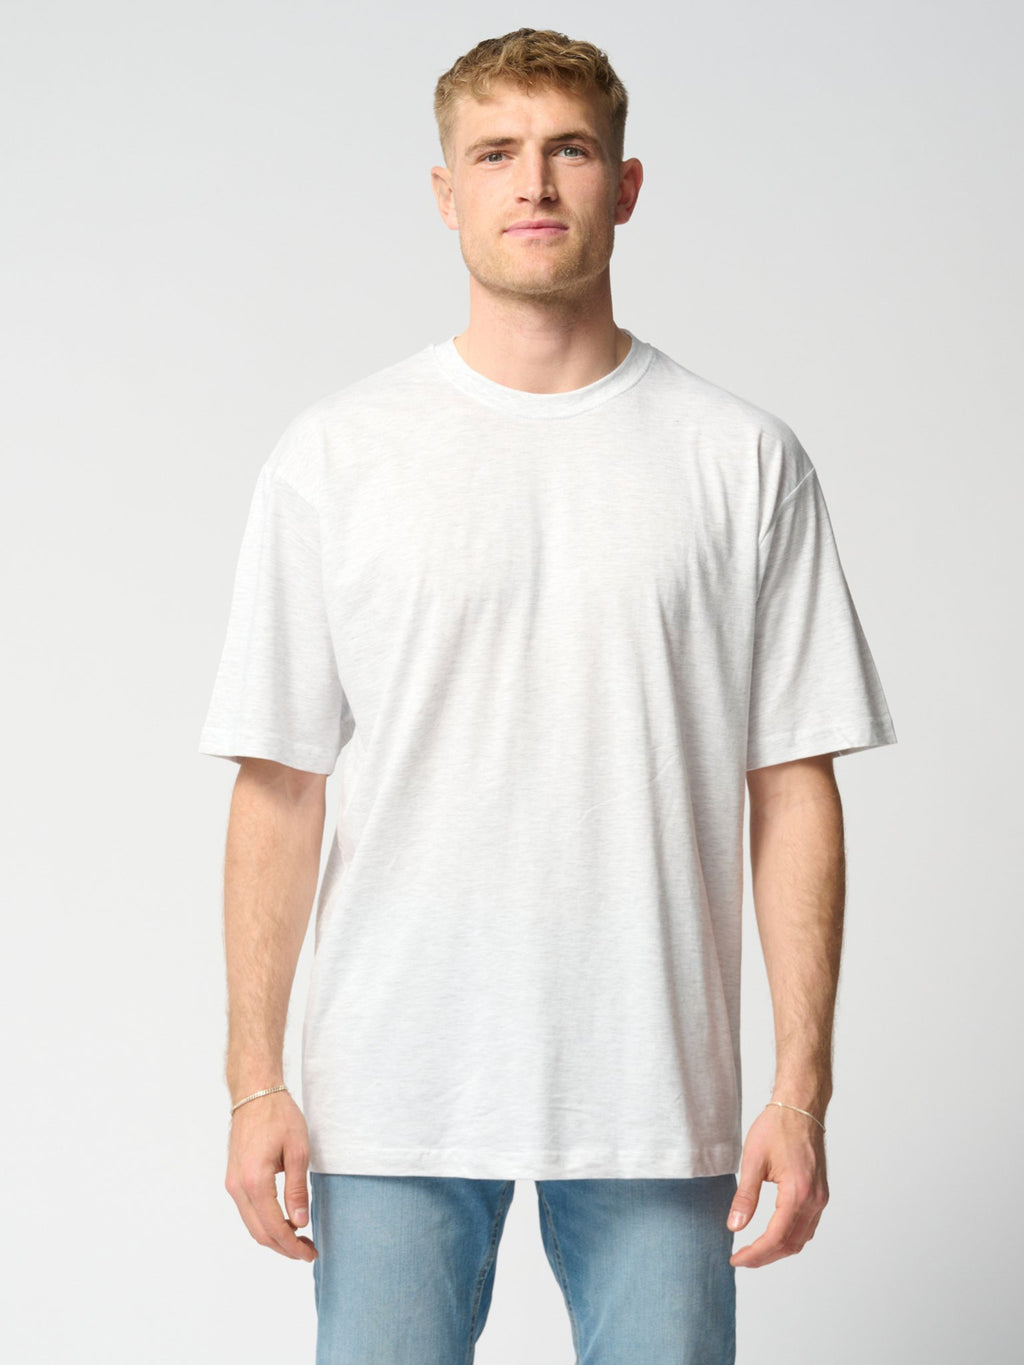 Oversized T-shirts - Πακέτο (9 τεμάχια) (FB)